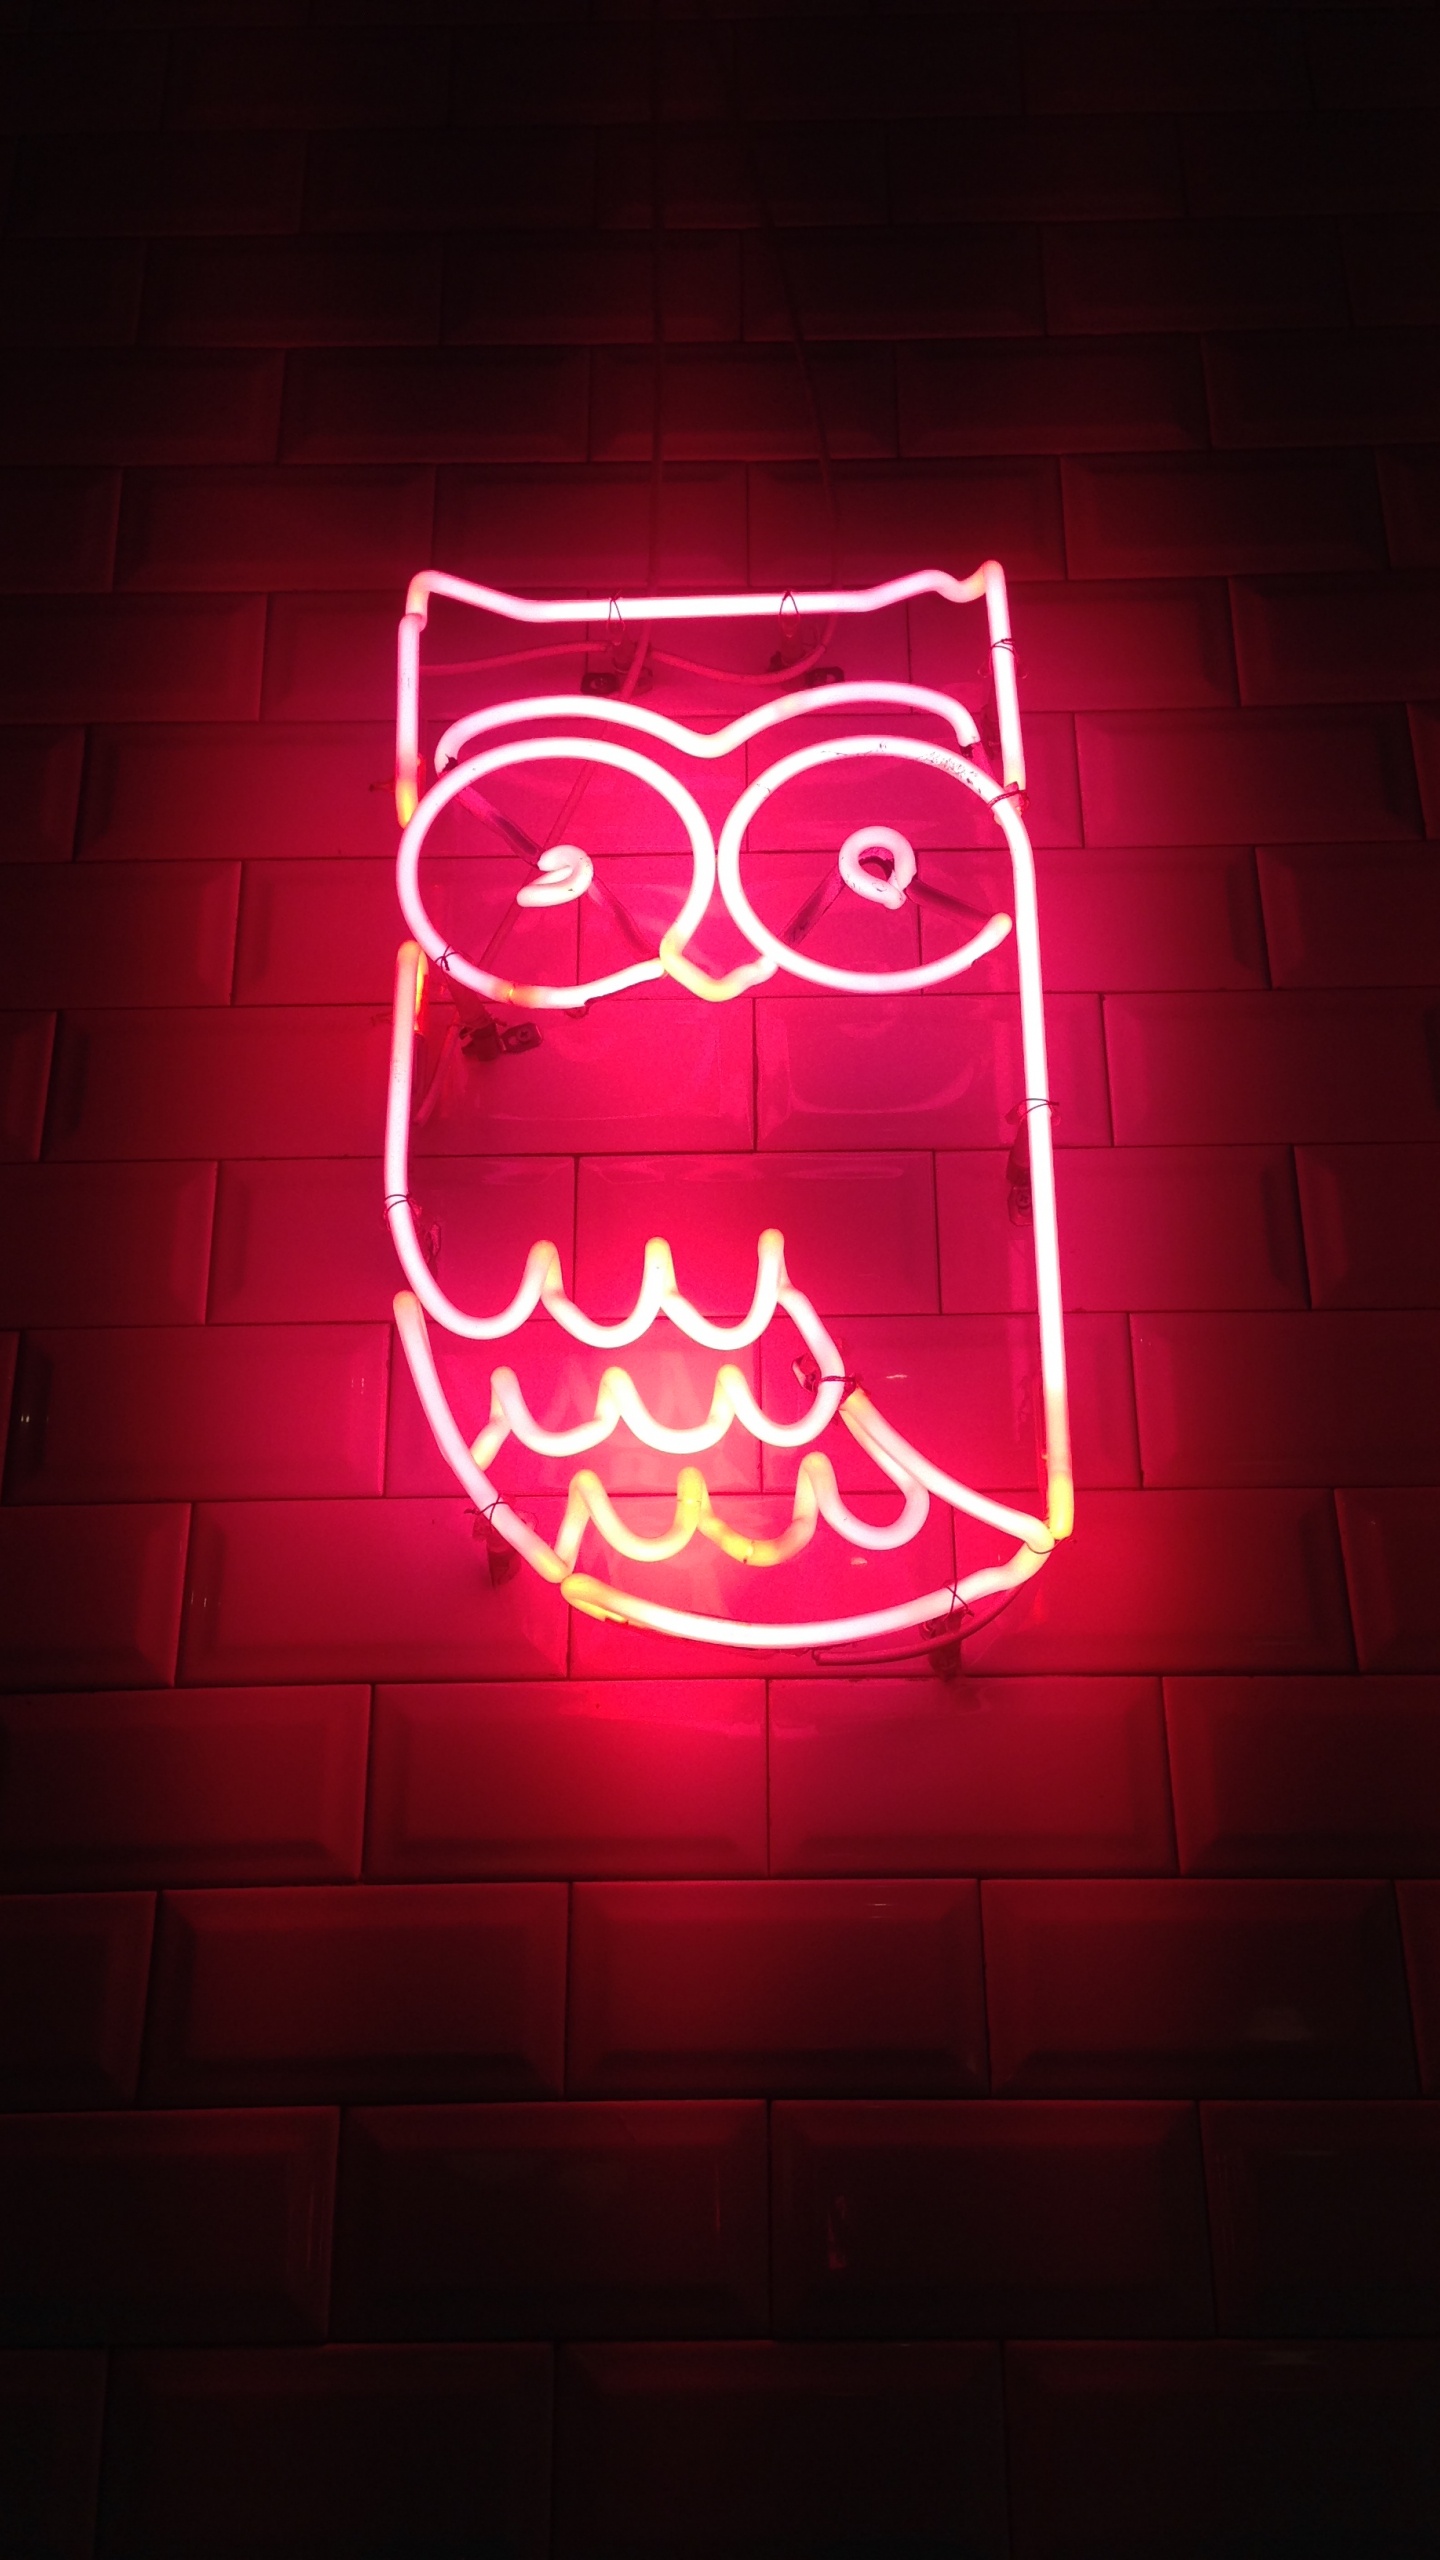 Aesthetic Neon Owl, Owls, Neon, Neon Lighting, Light. Wallpaper in 1440x2560 Resolution